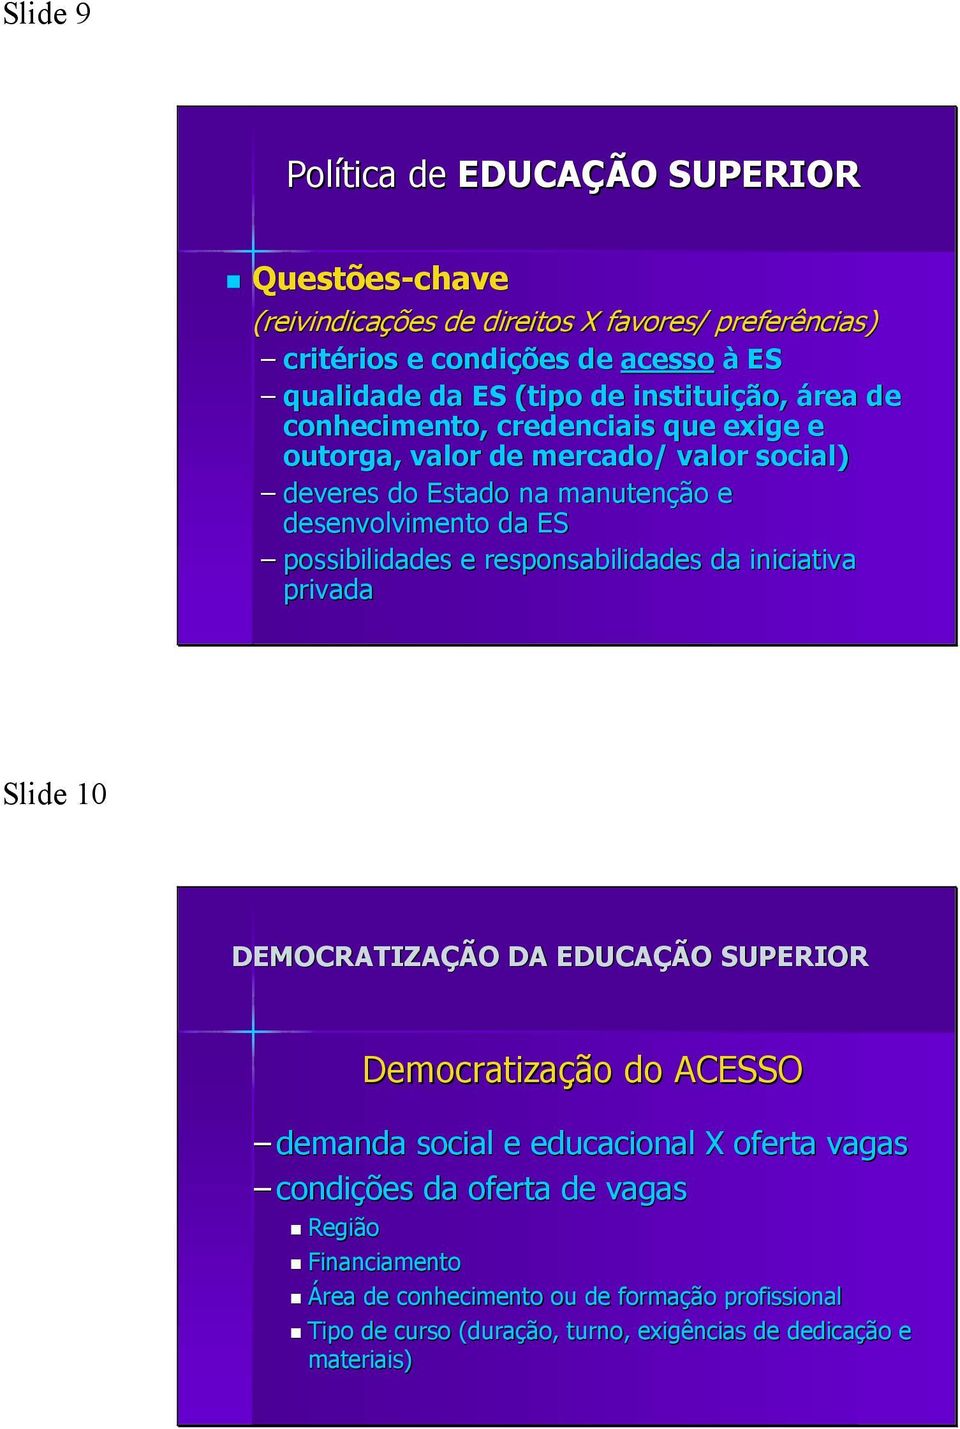 possibilidades e responsabilidades da iniciativa privada Slide 10 DEMOCRATIZAÇÃO DA EDUCAÇÃO SUPERIOR Democratização do ACESSO demanda social e educacional X oferta